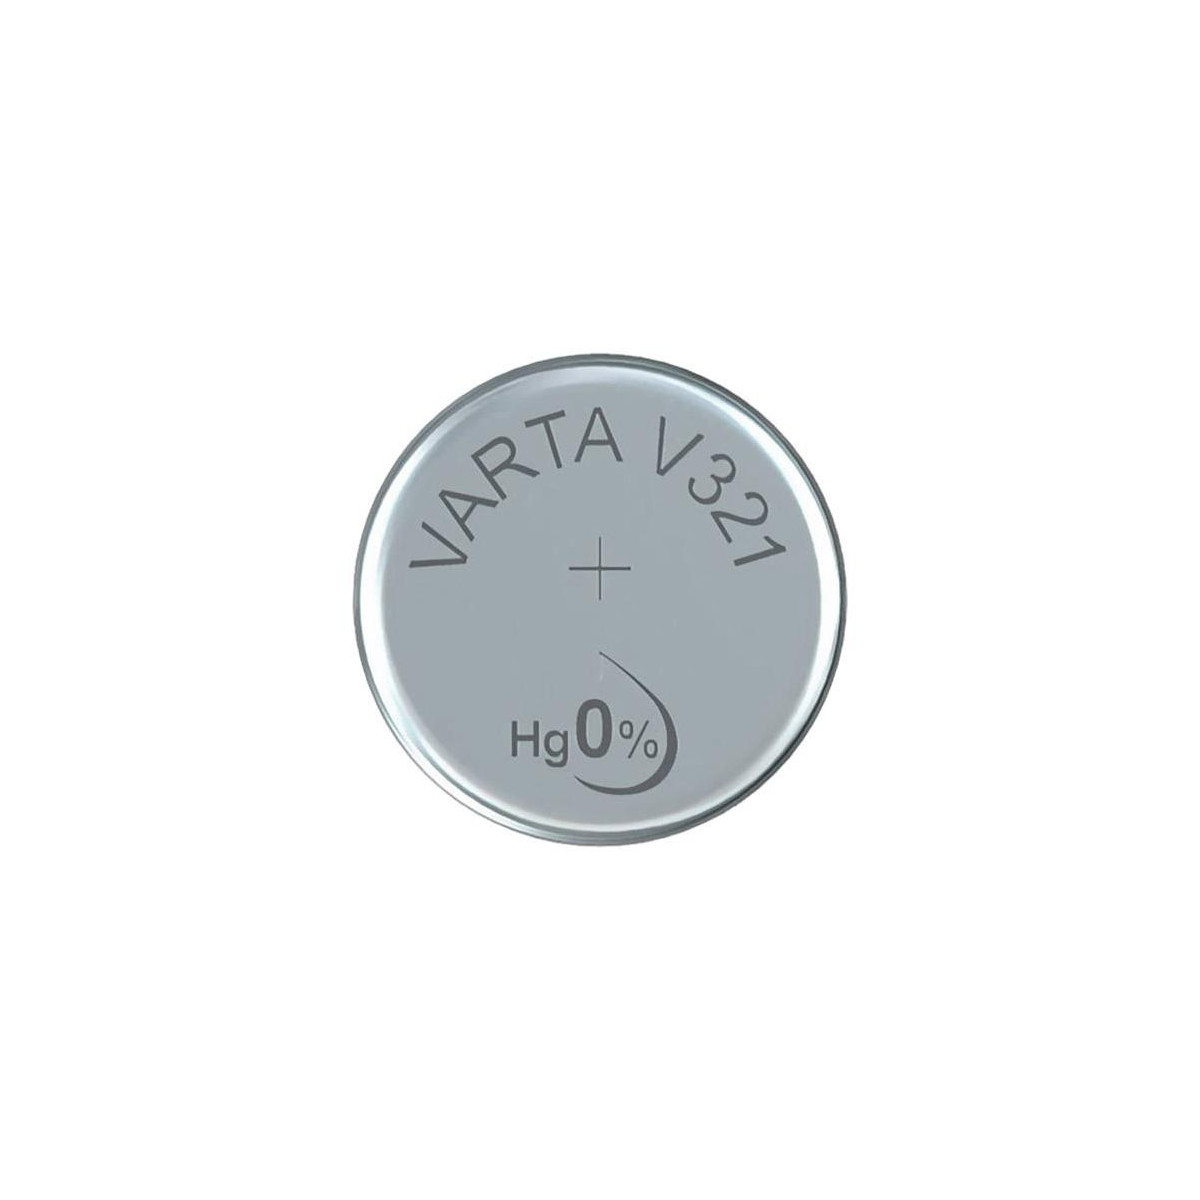 More about Baterie 321 VARTA V321/SR65